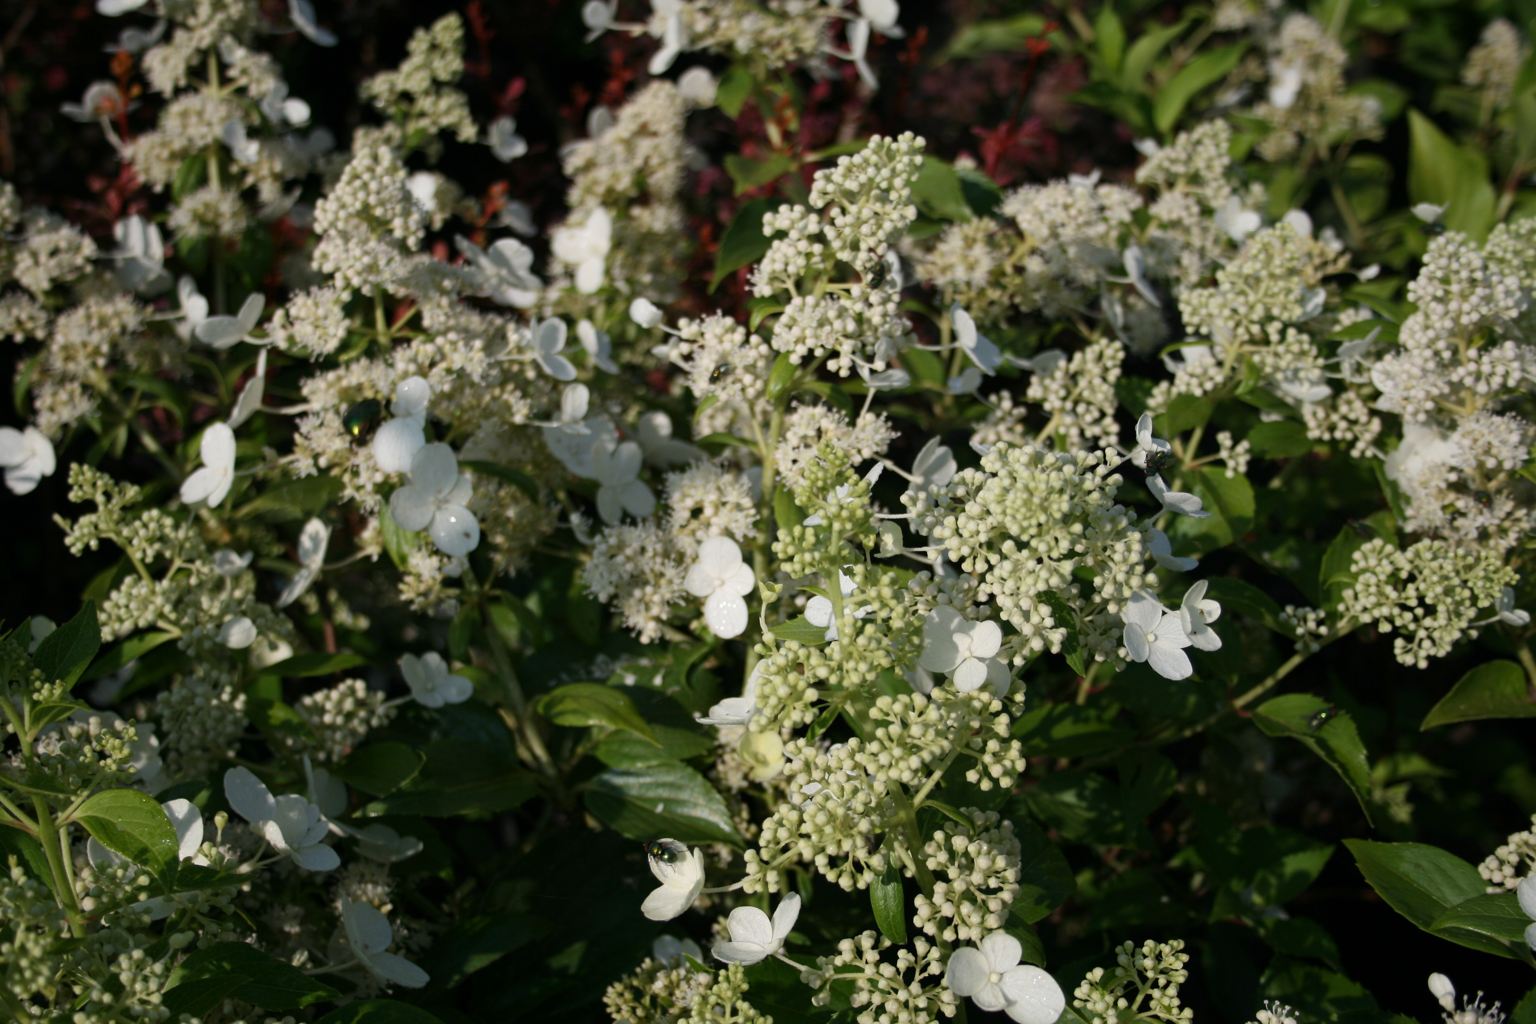 Hortensja bukietowa "Kyushu" / Hydrangea paniculata "Kyushu"